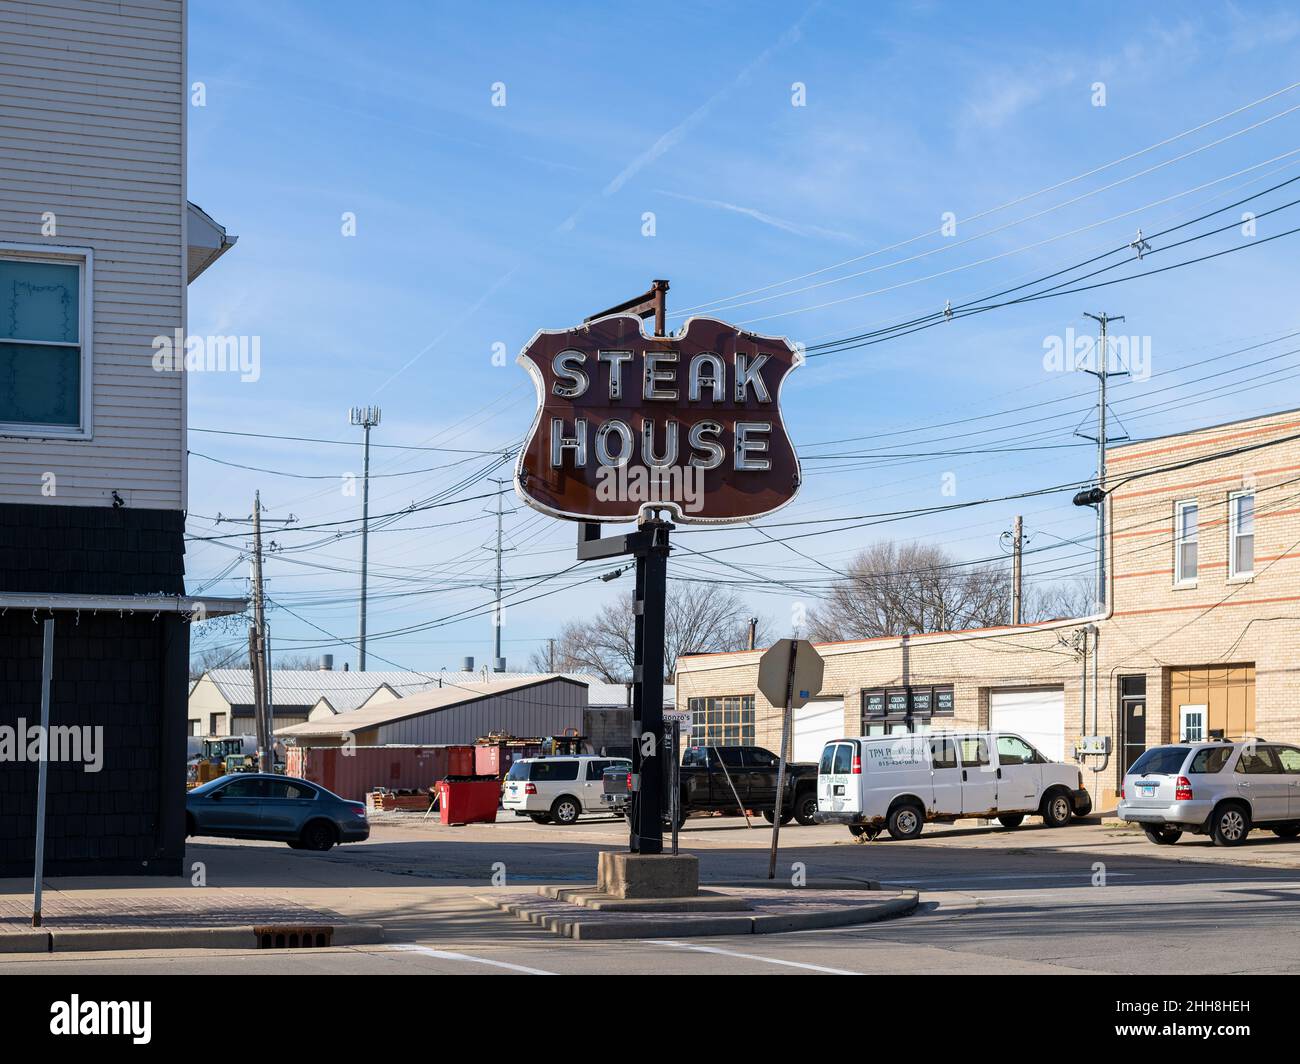 Steak House in LaSalle Illinois Stock Photo